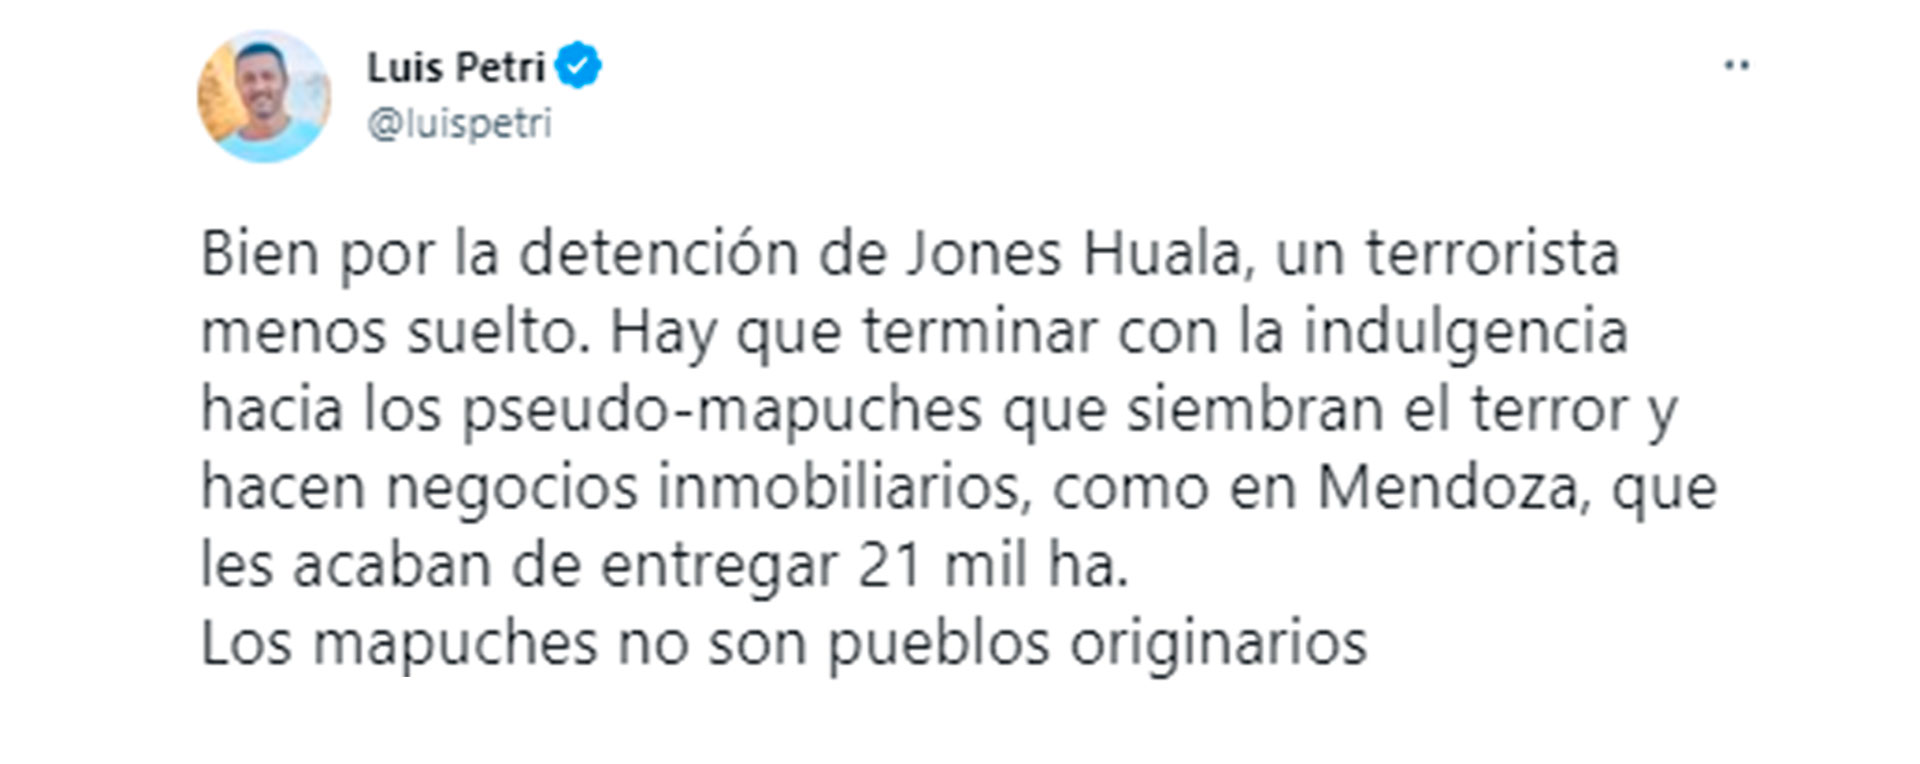 Luis Petri, ex diputado nacional por Mendoza, celebró la captura de Jones Huala pero criticó duramente la entrega de tierras a comunidades mapuches de Mendoza. 